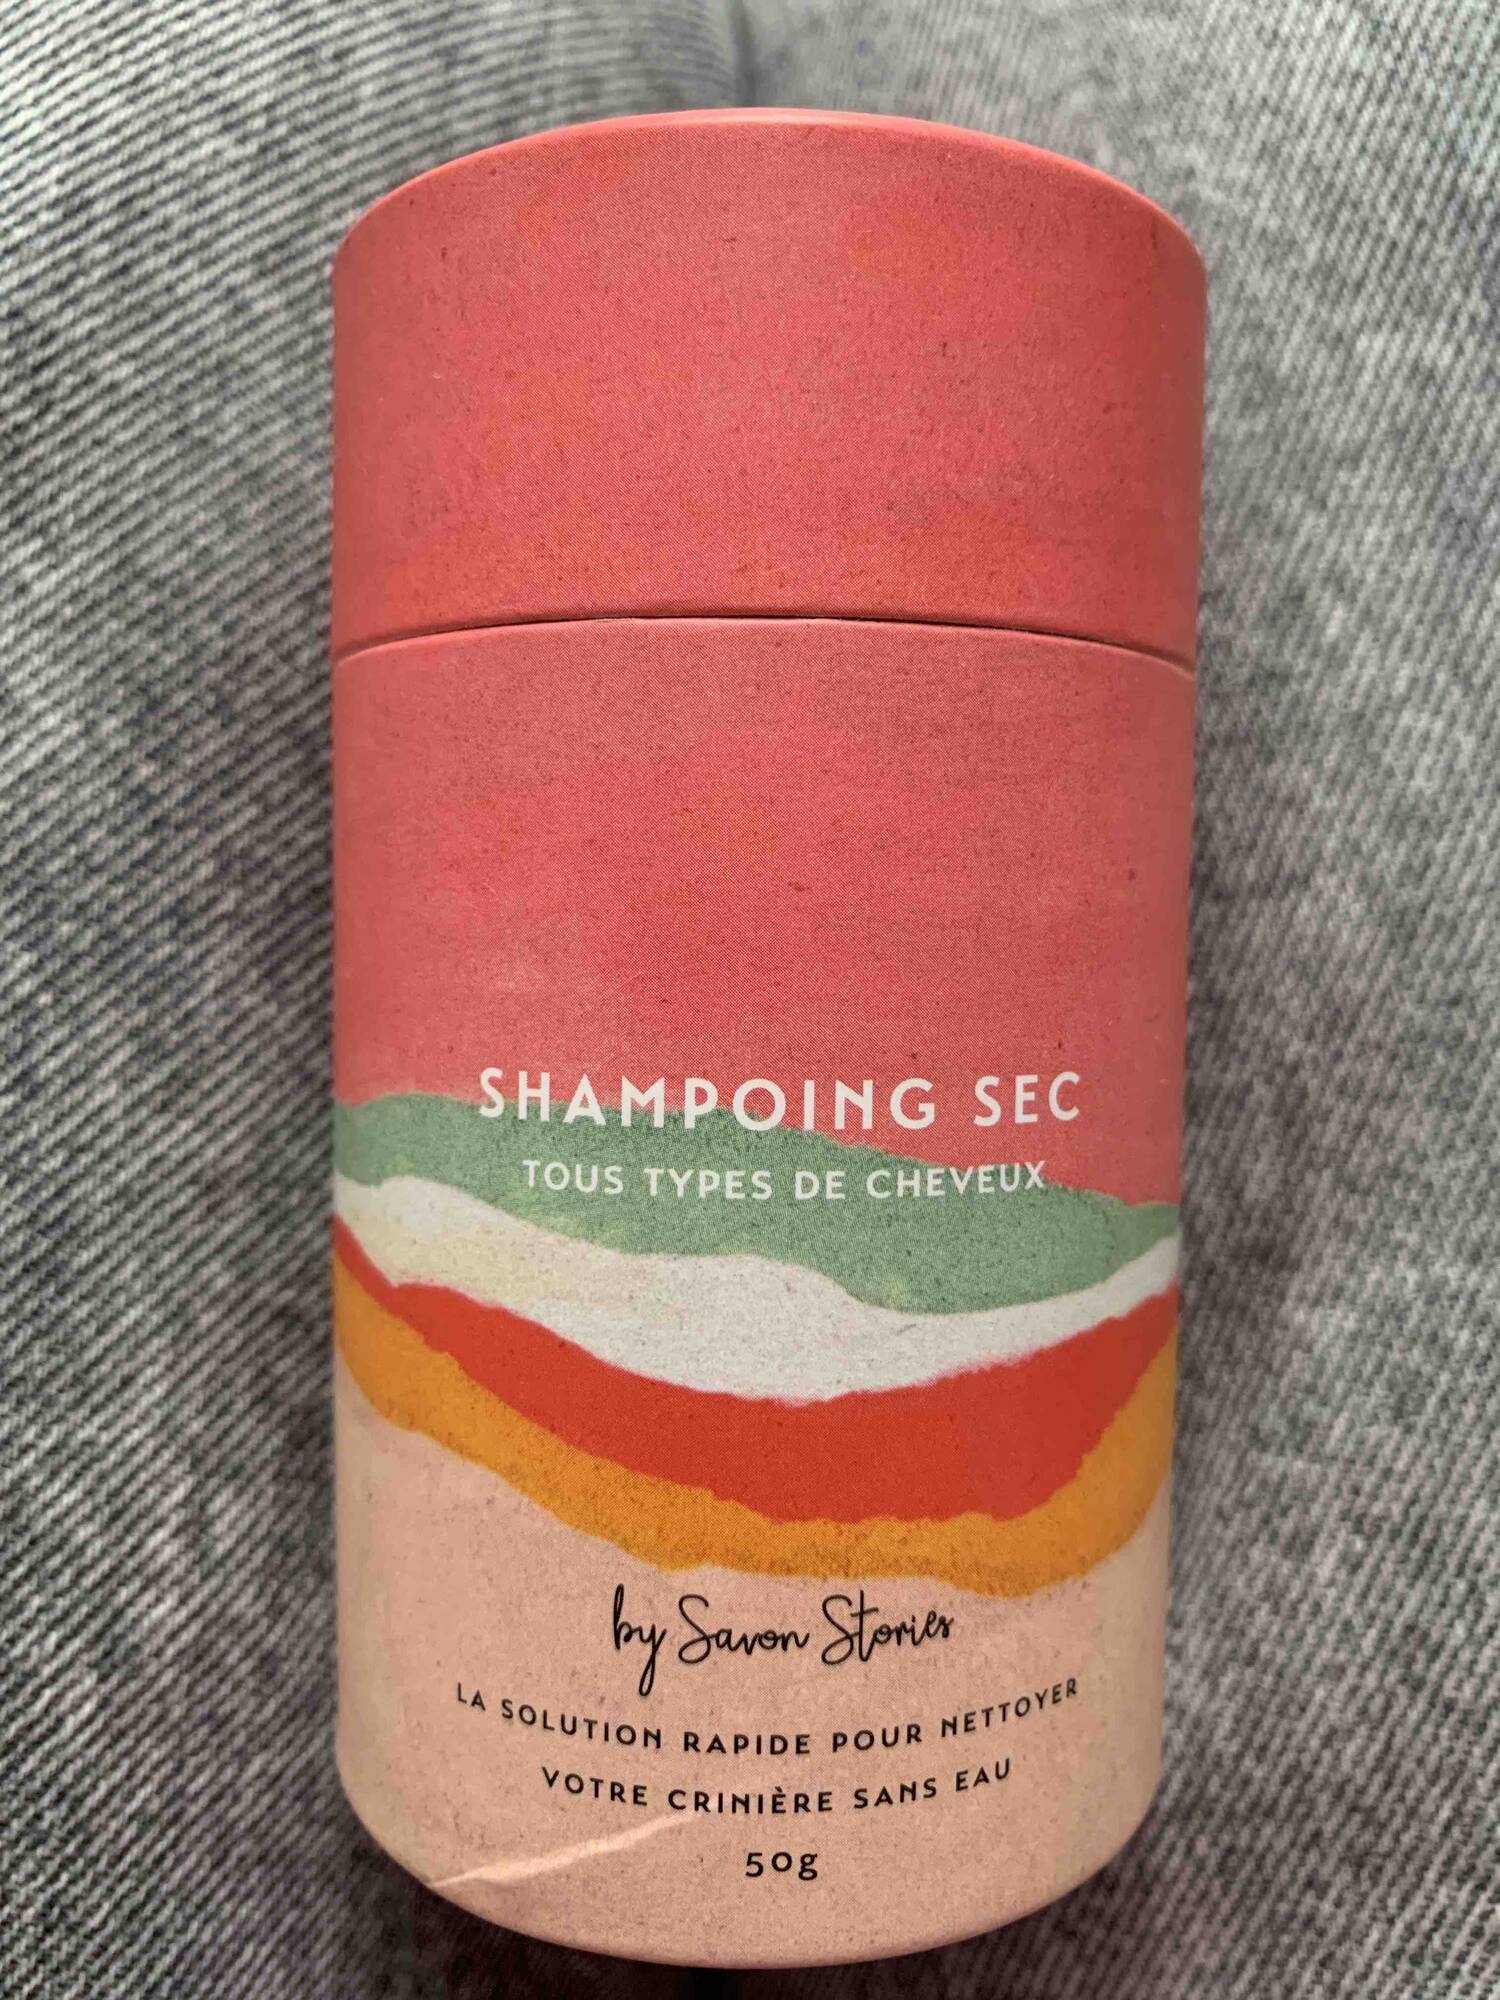 SAVON STORIES - Shampooing sec